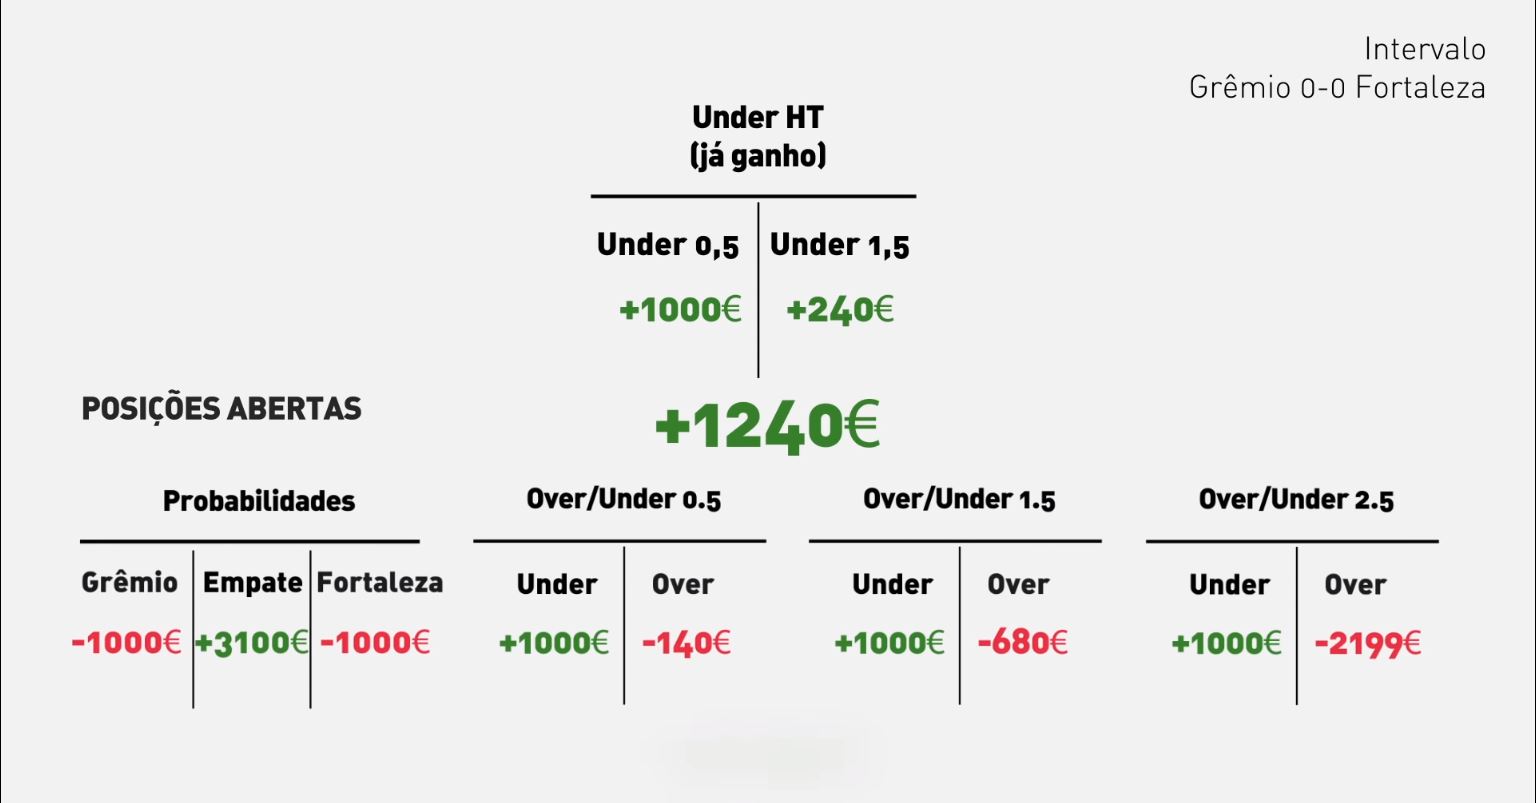 [img 05-1-02] alt: Resumo das posições de apostas ao intervalo, jogo 0-0